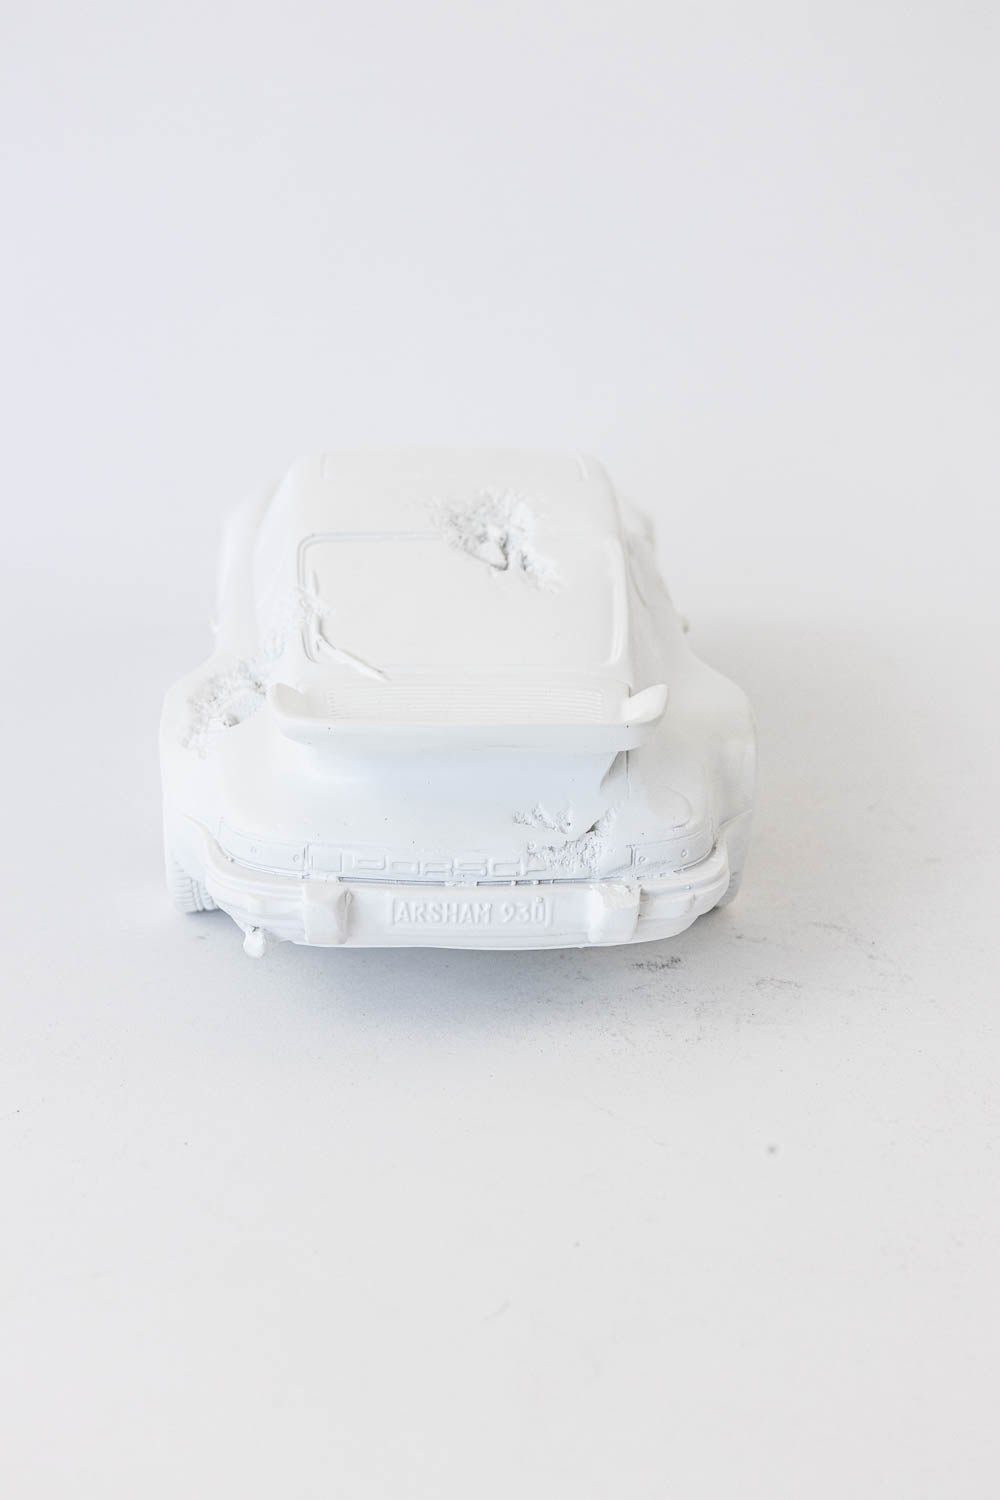 Daniel Arsham Eroded 911 Turbo Figure (Edition of 500) White "Damage - No Box"